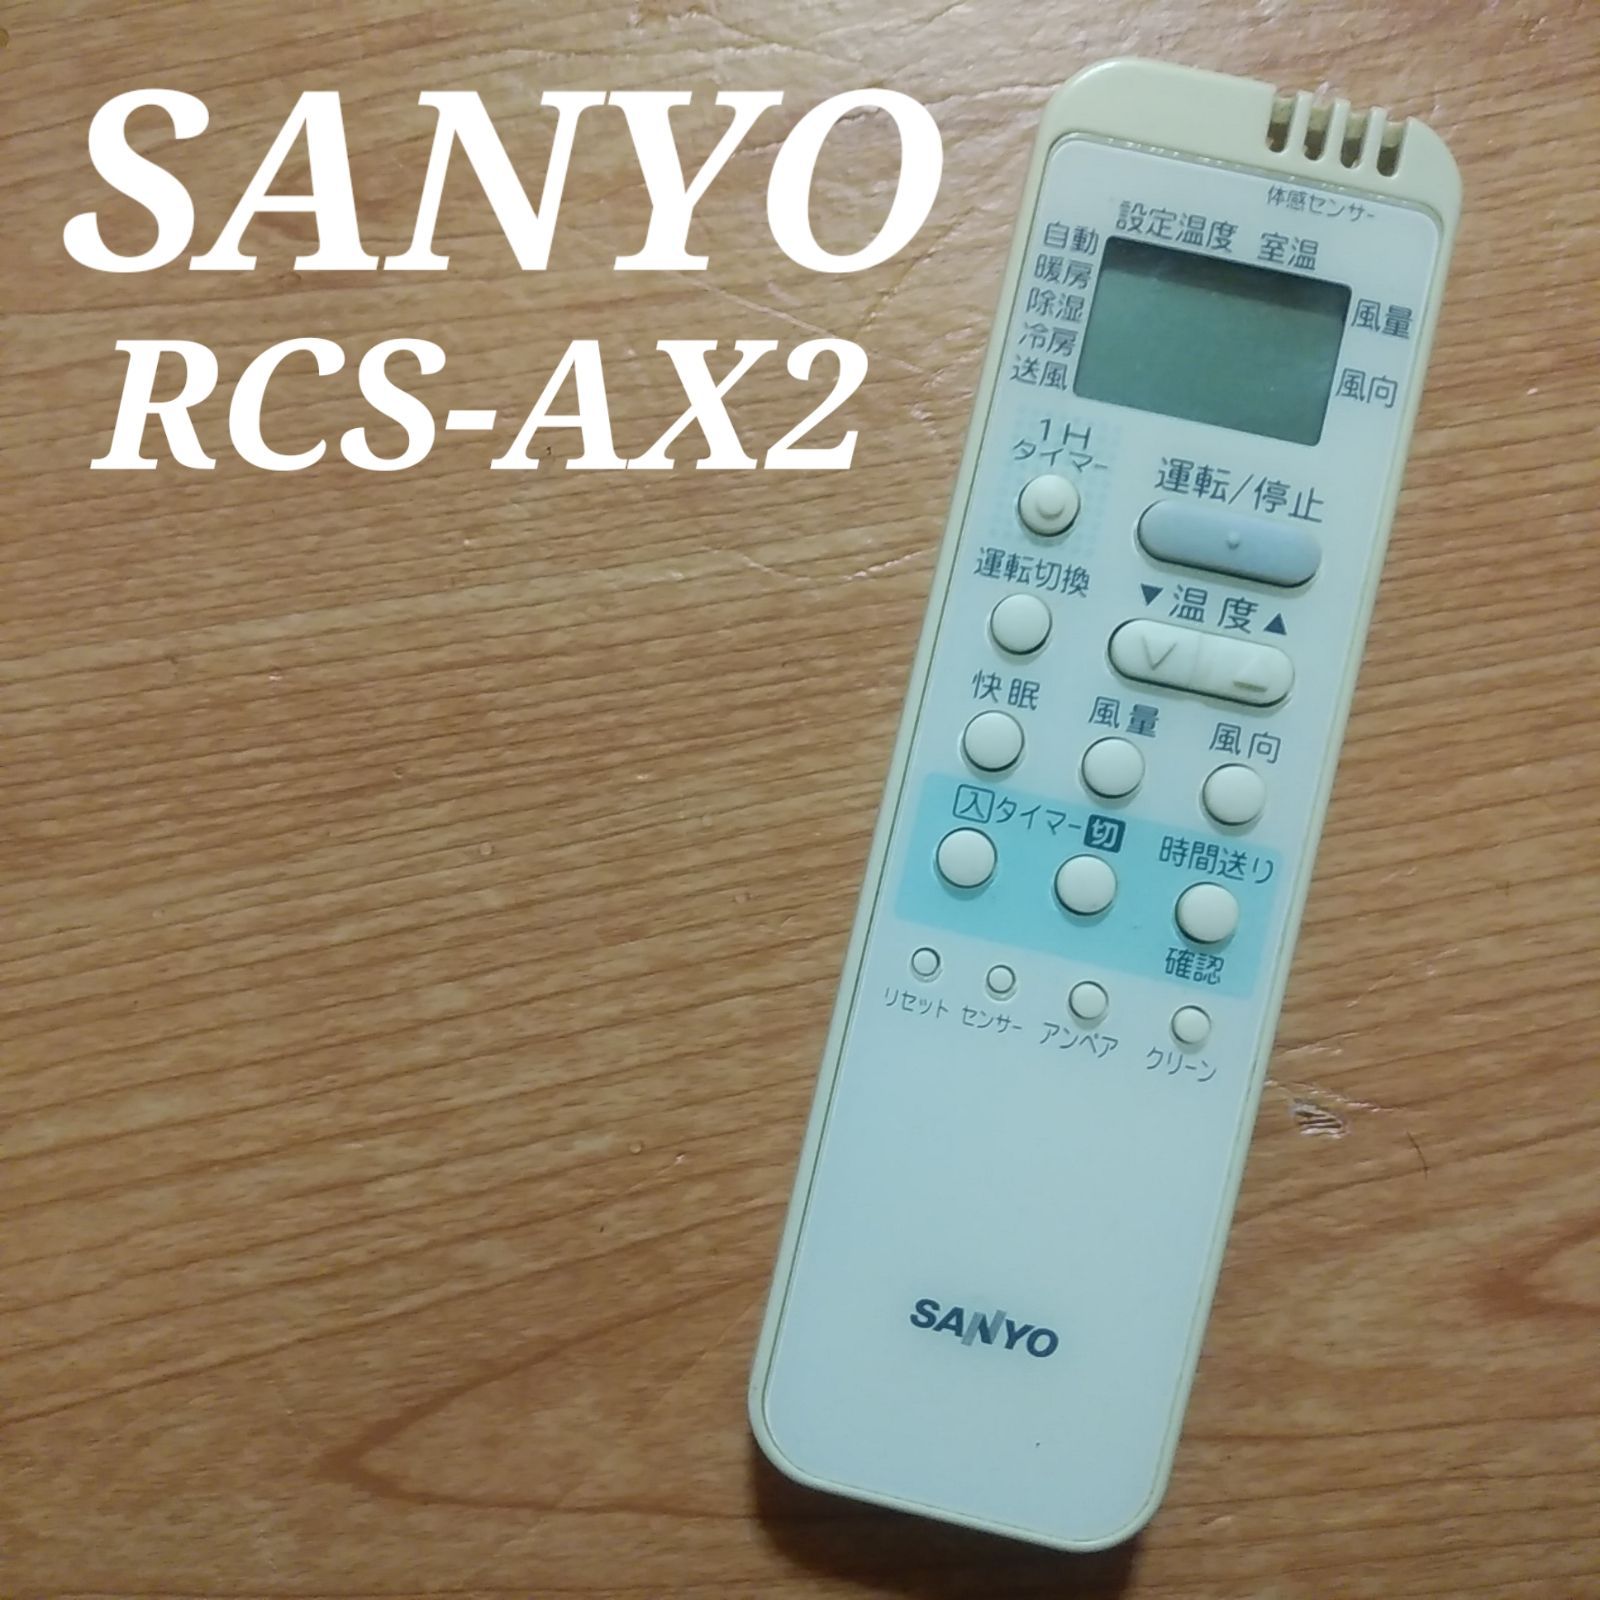 サンヨー SANYO エアコン リモコン ＲＣＳーＡＸ２ - 空調